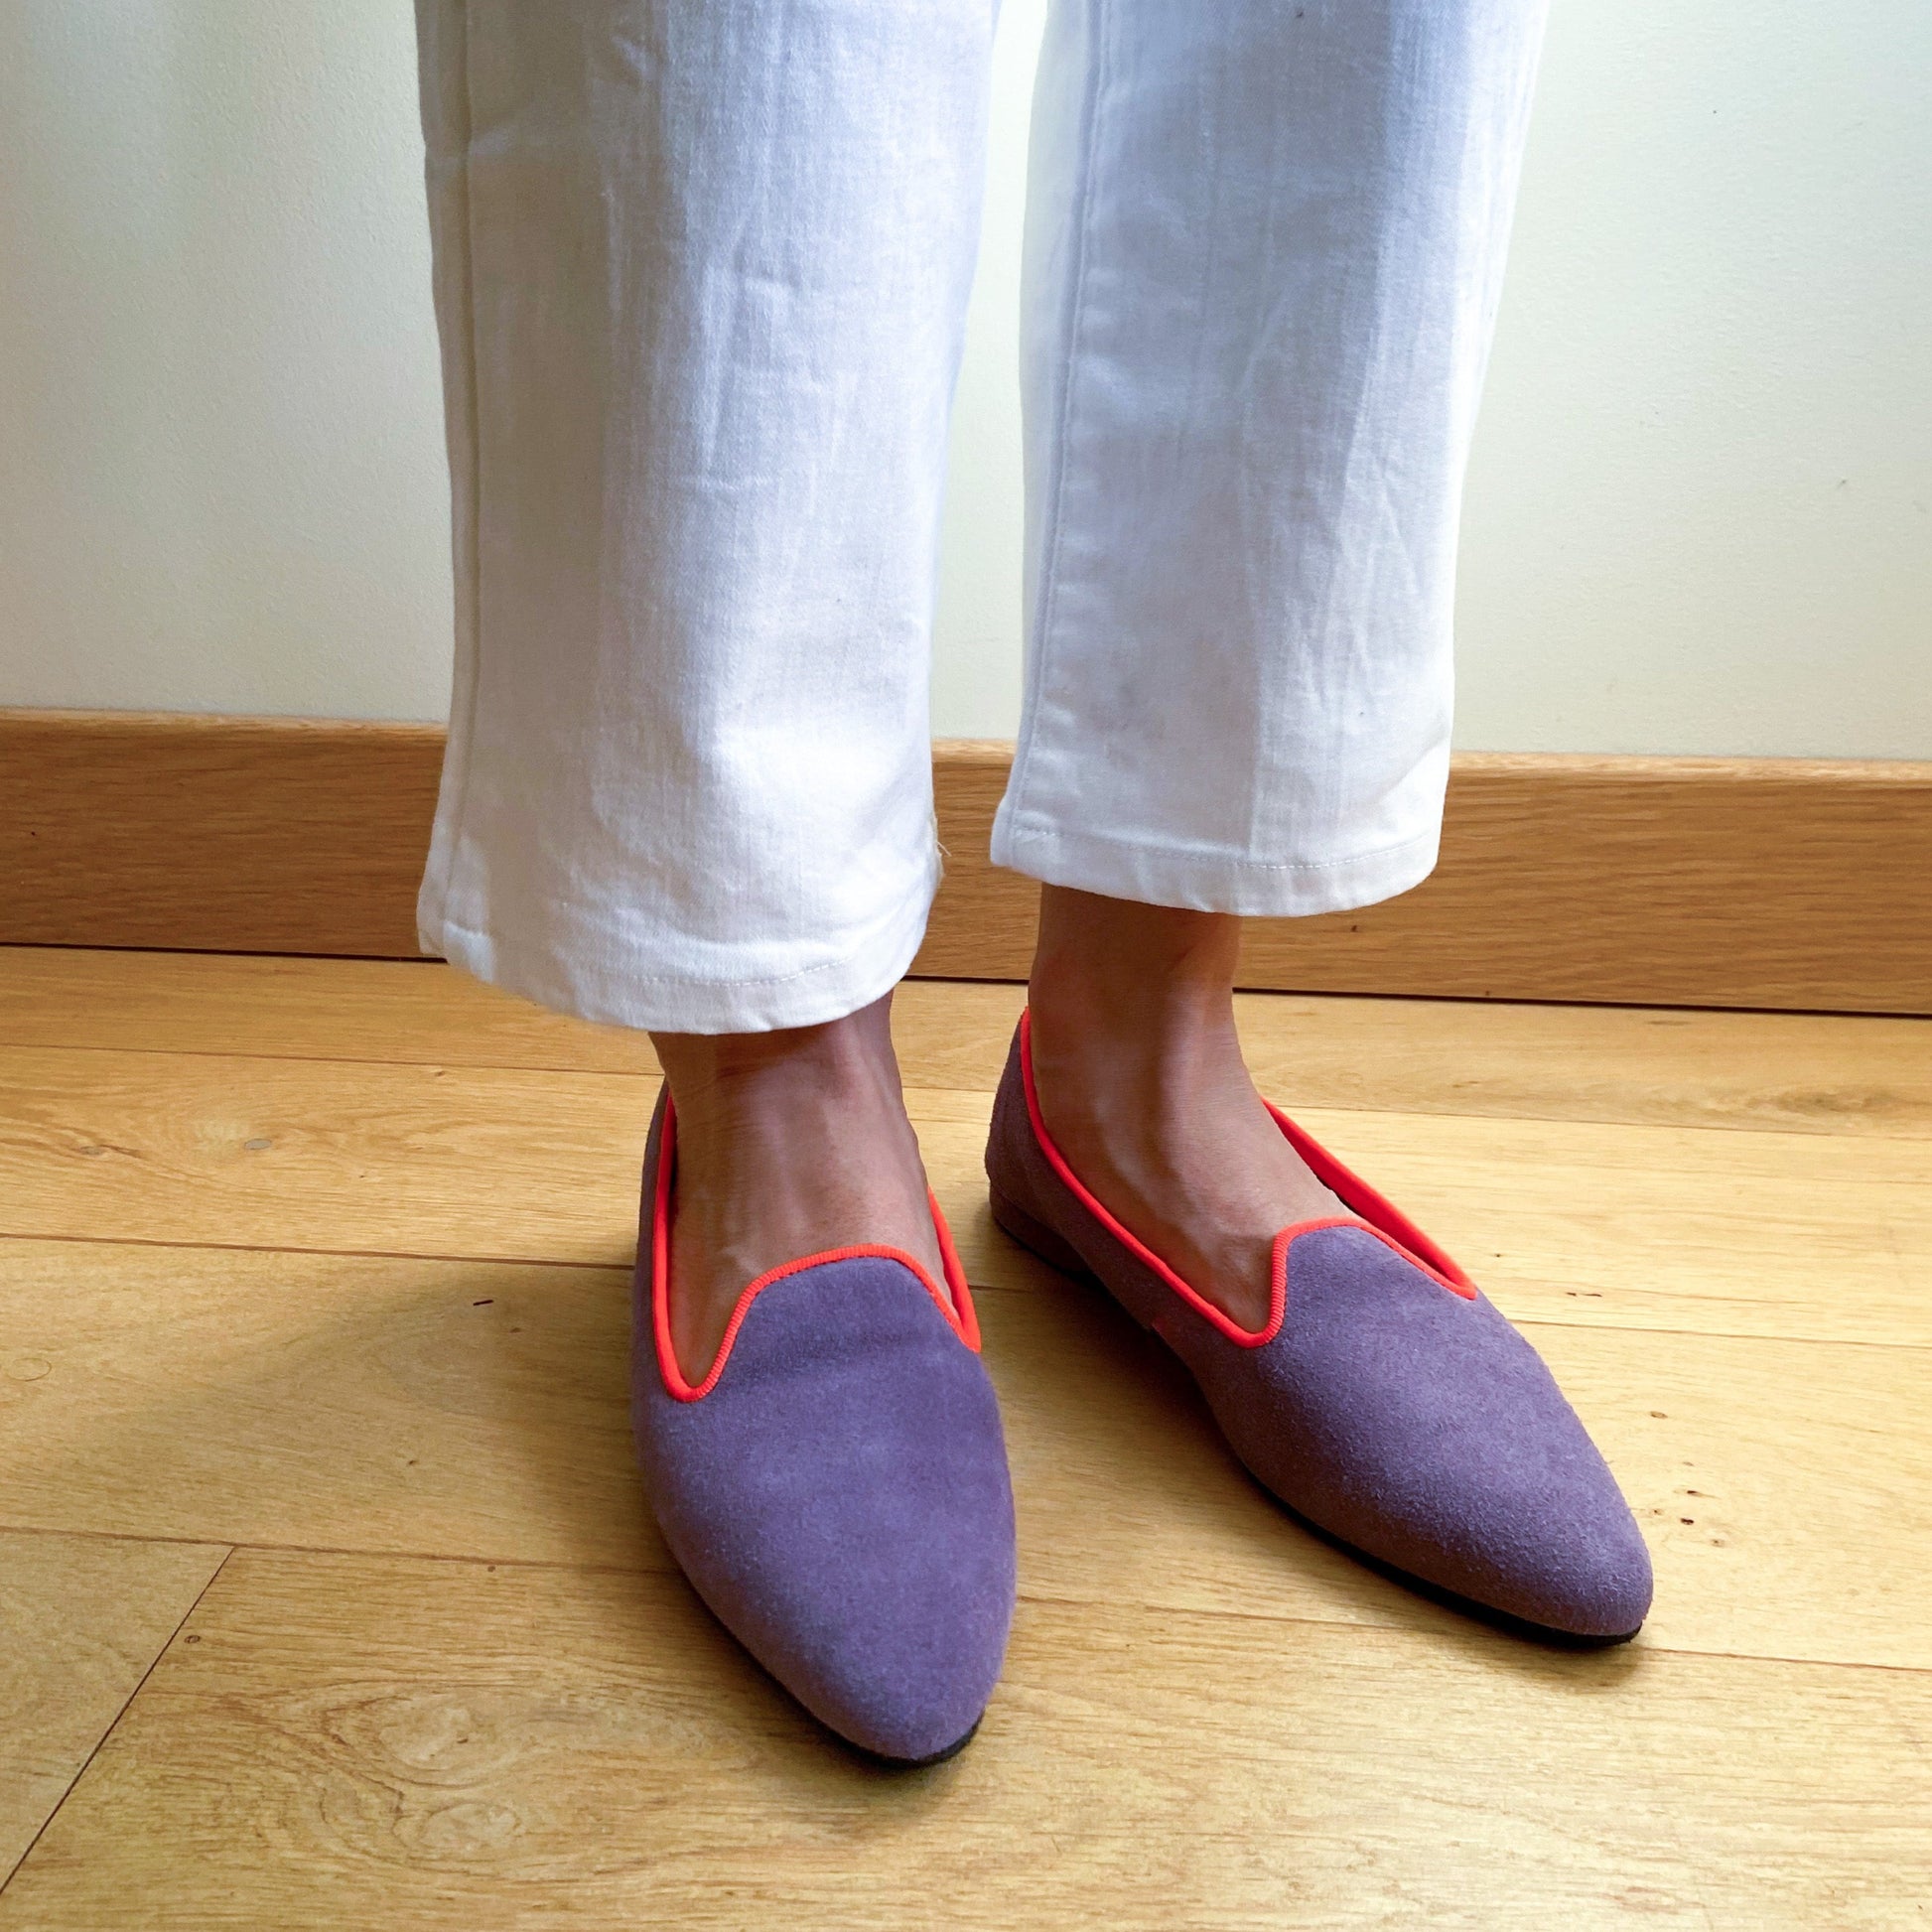 Slippers VOLUBILIS PARIS en cuir de couleur lilas, pour allier confort et élégance à la maison.